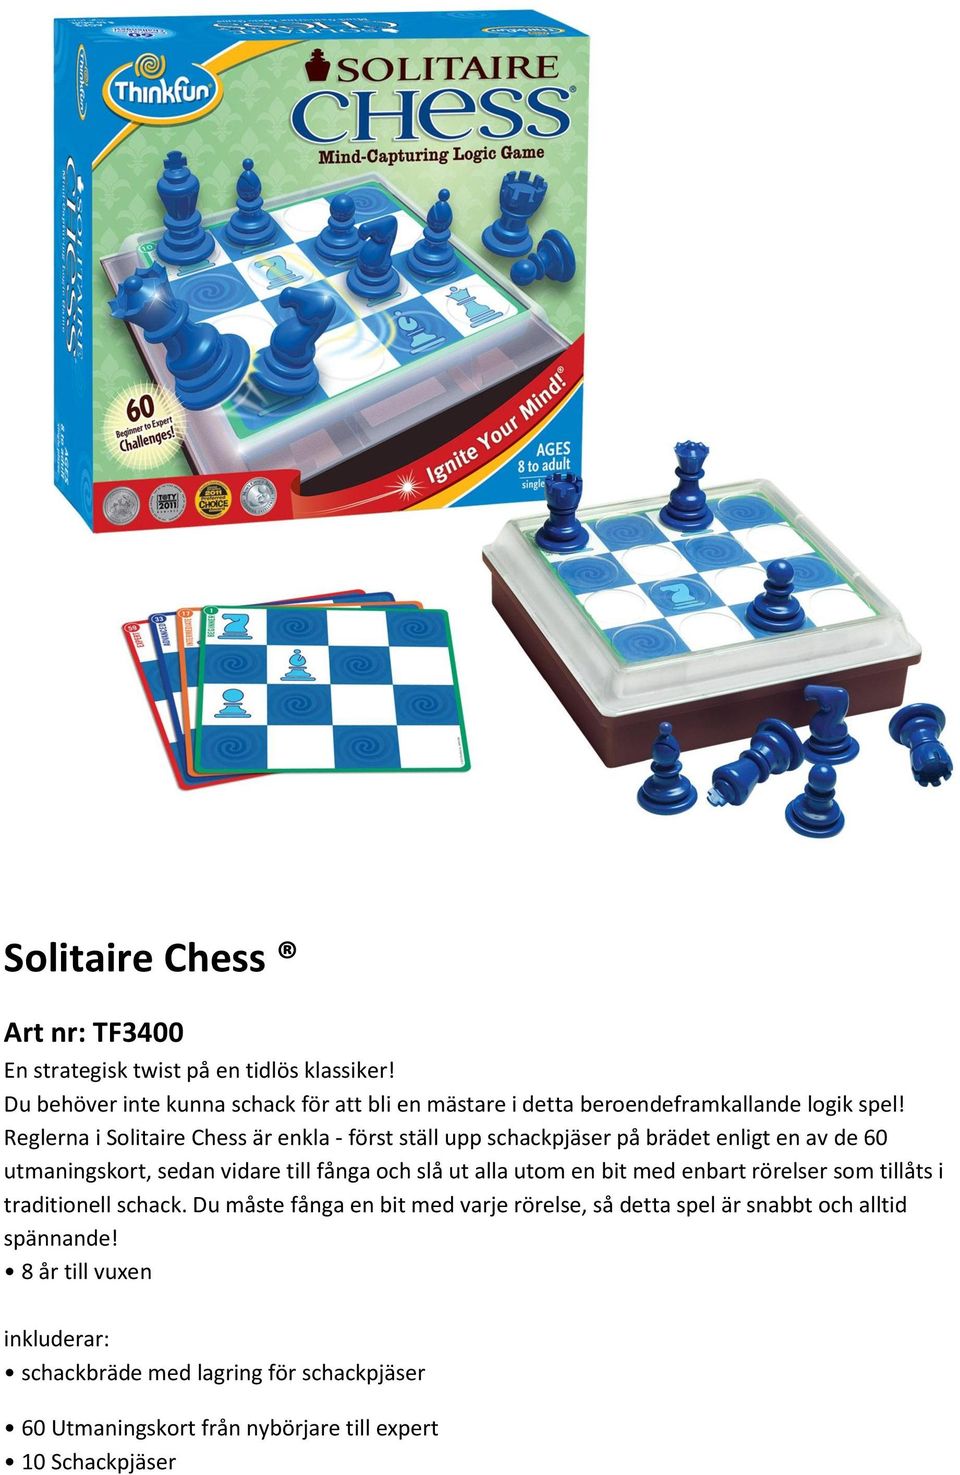 Reglerna i Solitaire Chess är enkla - först ställ upp schackpjäser på brädet enligt en av de 60 utmaningskort, sedan vidare till fånga och slå